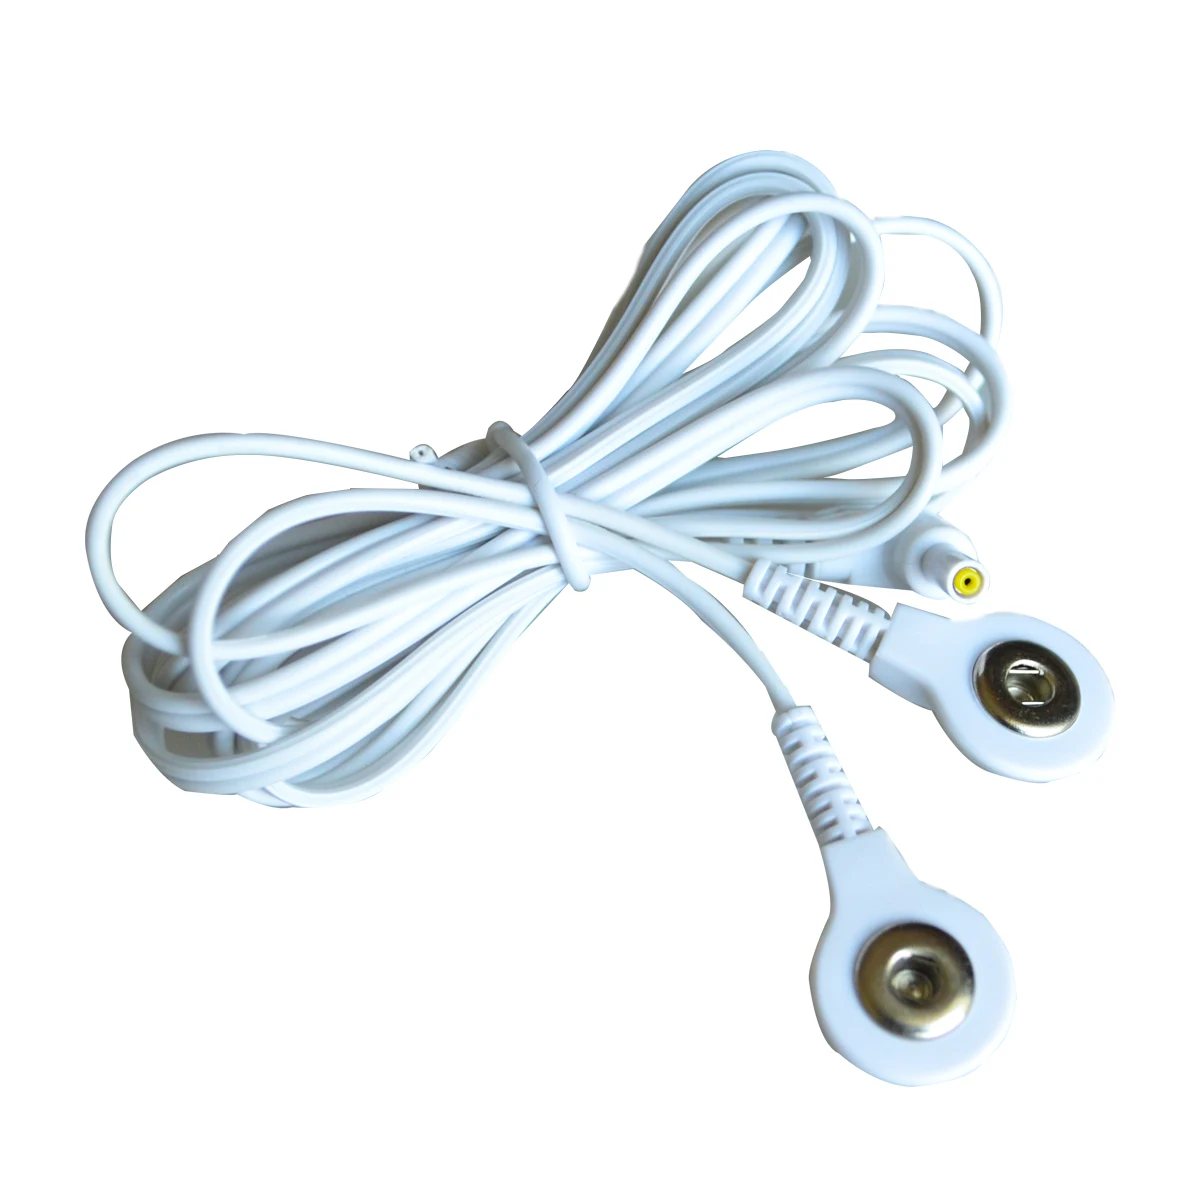 5 шт/лот Сменные электродные накладки Tens блок свинцовые Провода кабели для Tens 7000 стандарт 2,5 мм соединительные массажные инструменты